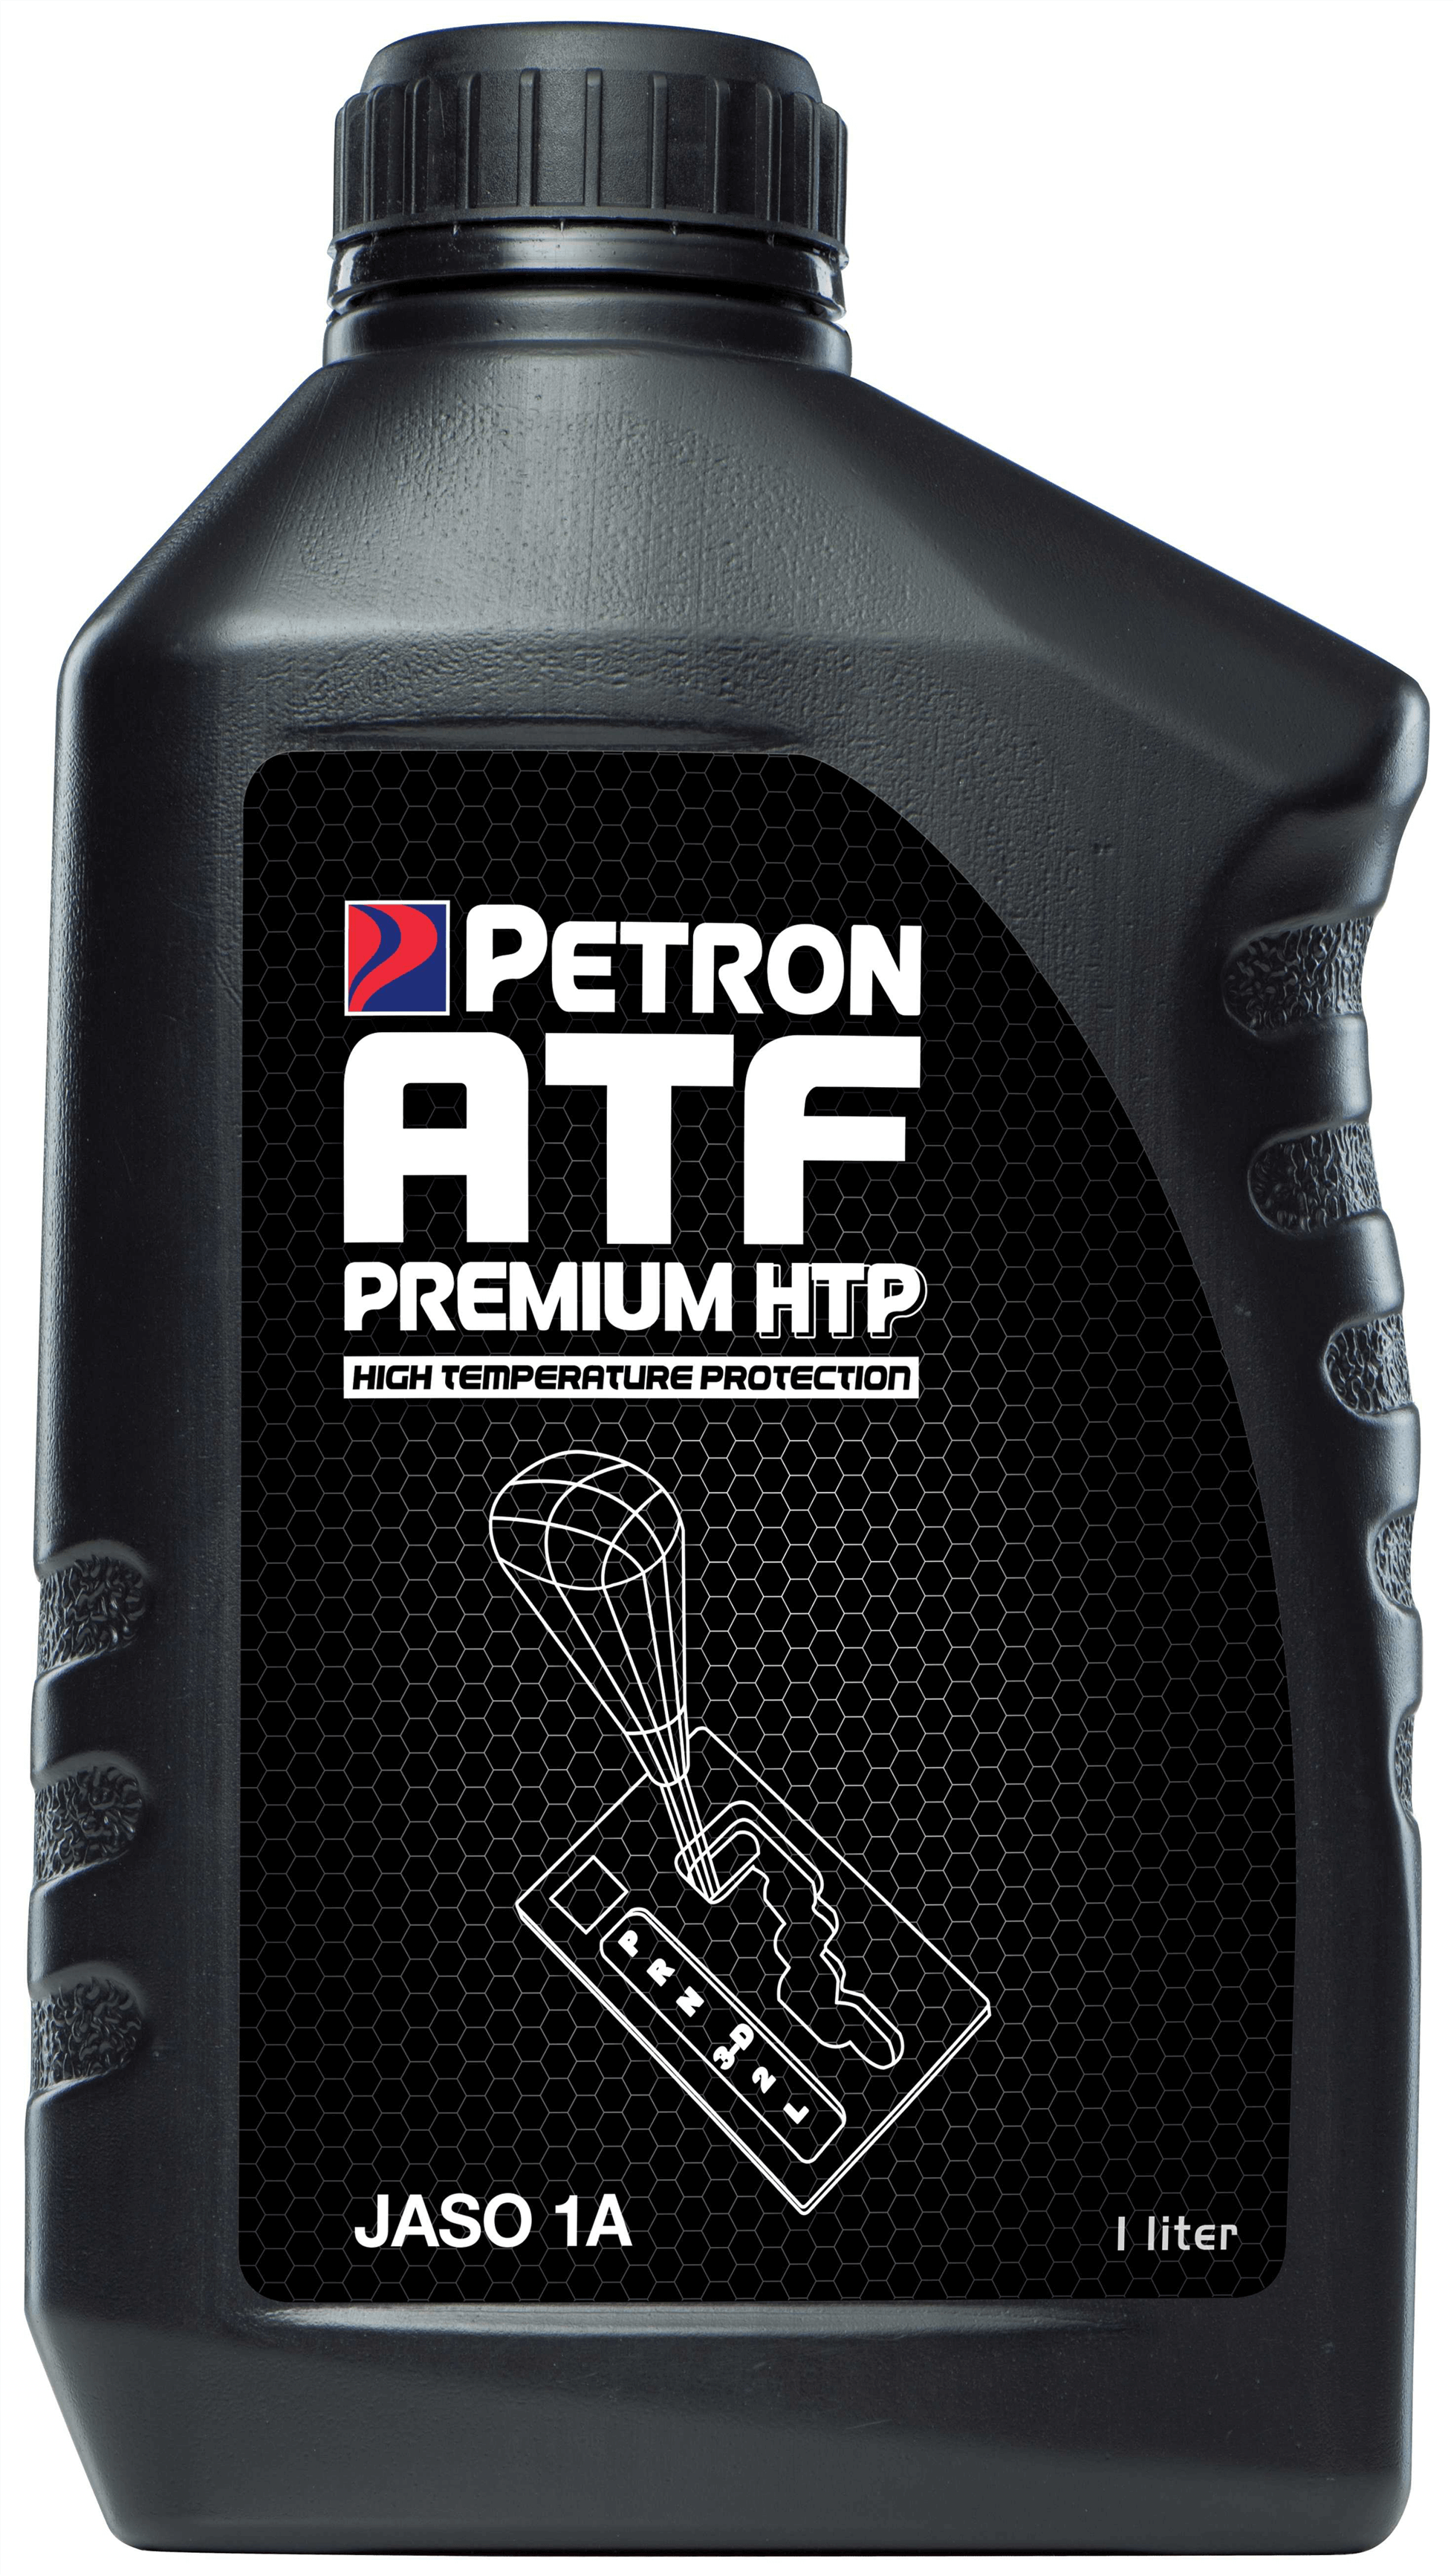 Petron ATF Premium HTP